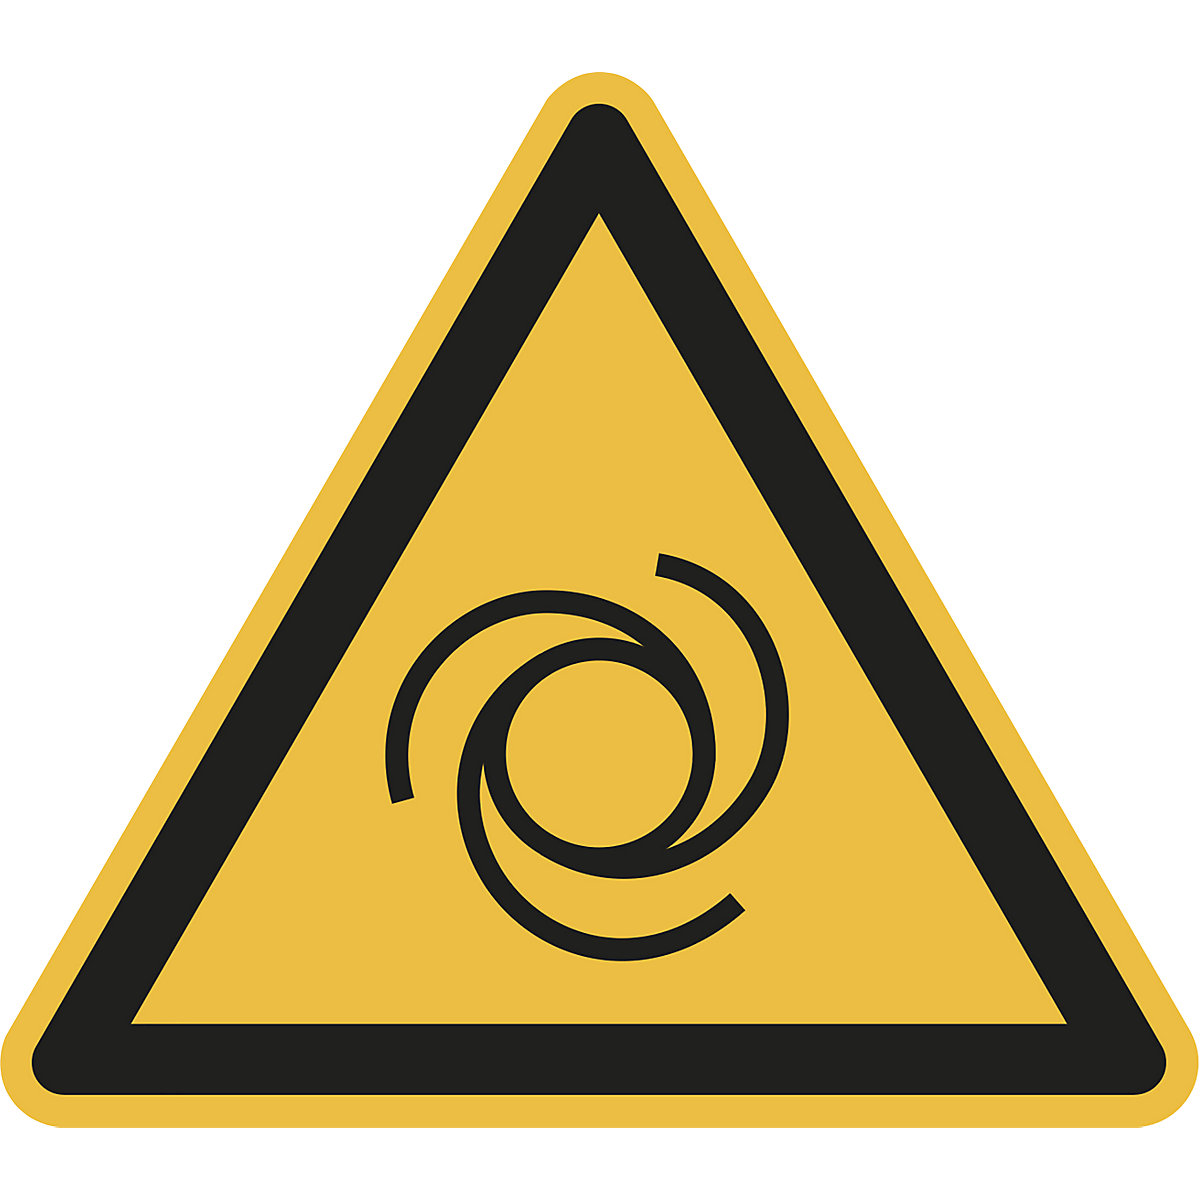 Varnostni znak, opozorilo pred samodejnim zagonom, DE 10 kosov, umetna masa, dolžina kraka 200 mm-2